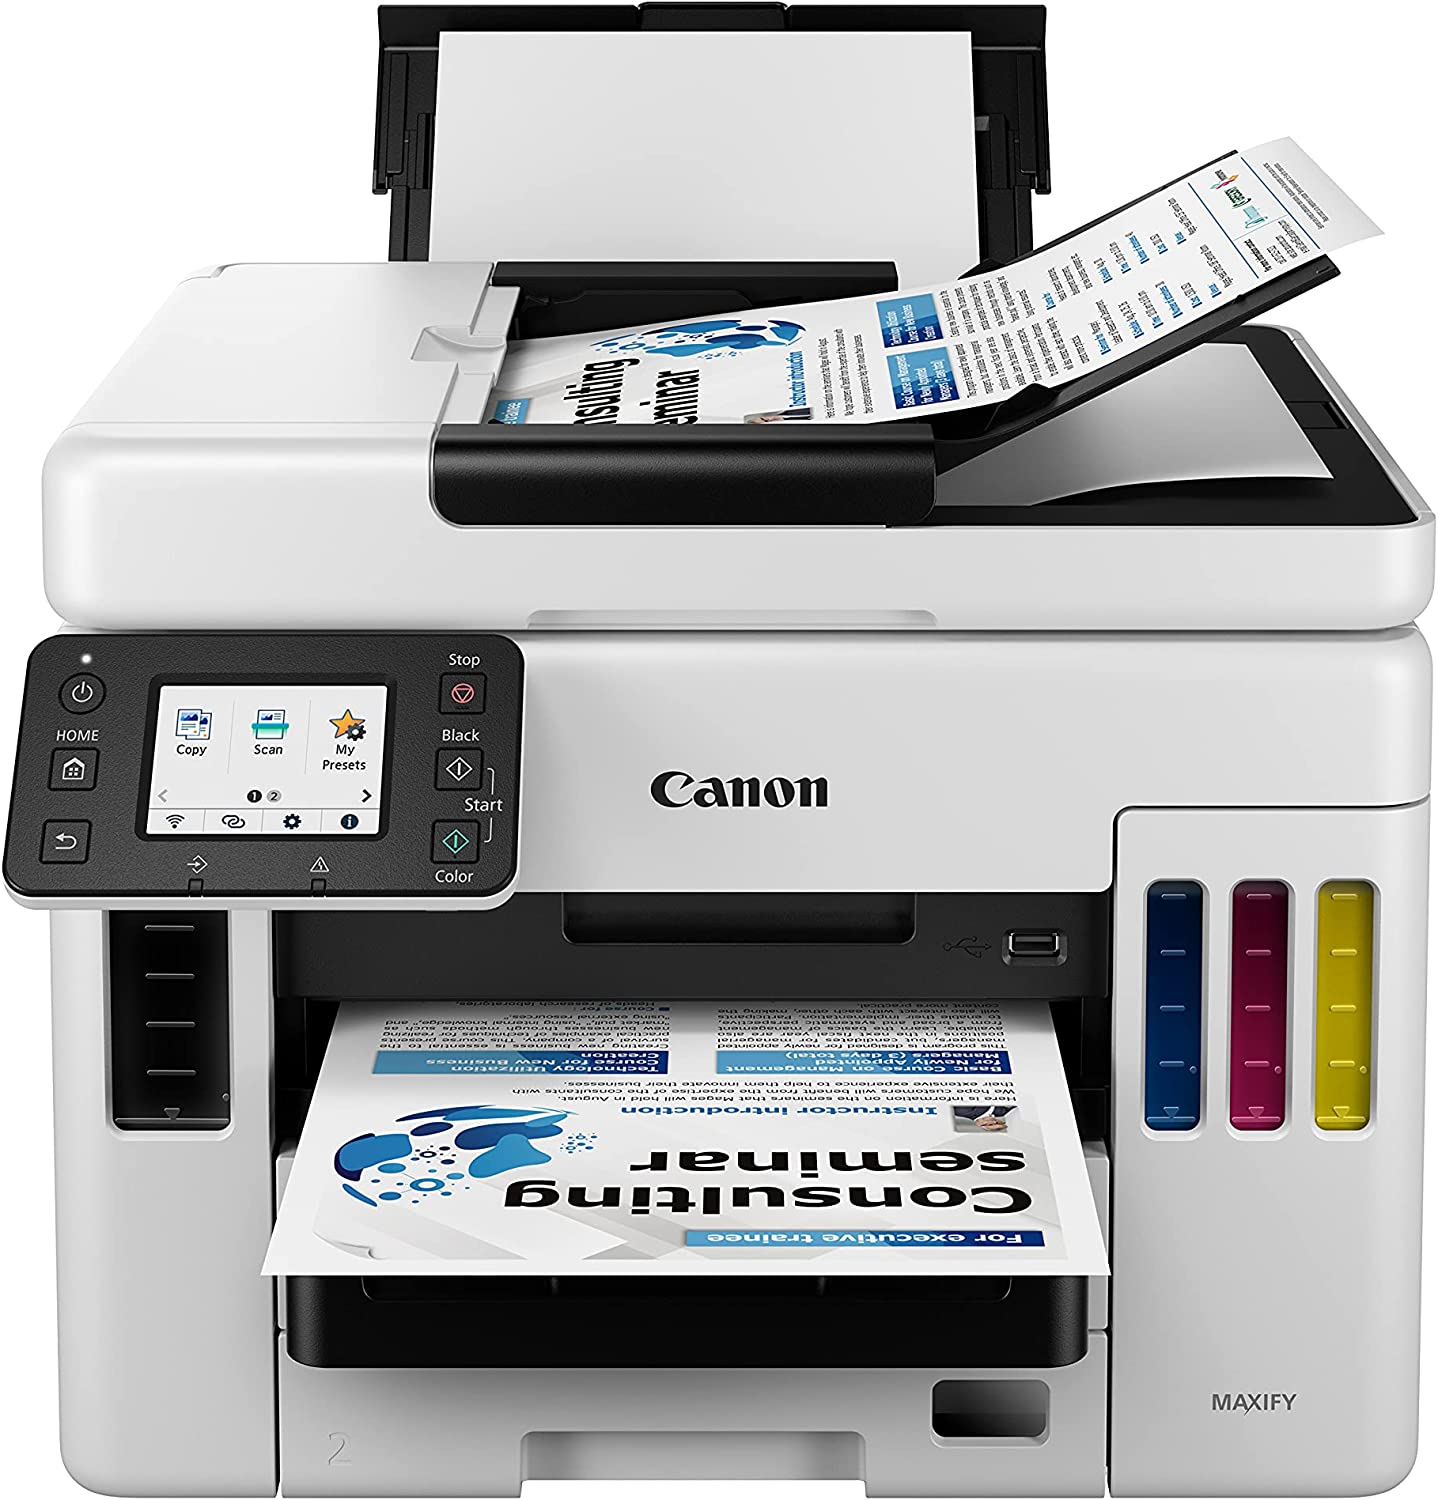 Impresora multifuncional CANON Maxify GX7010, Tecnología tinta continua. Impresora, copiadora, escáner y fax. Pantalla táctil en color de 2.7 pulgadas